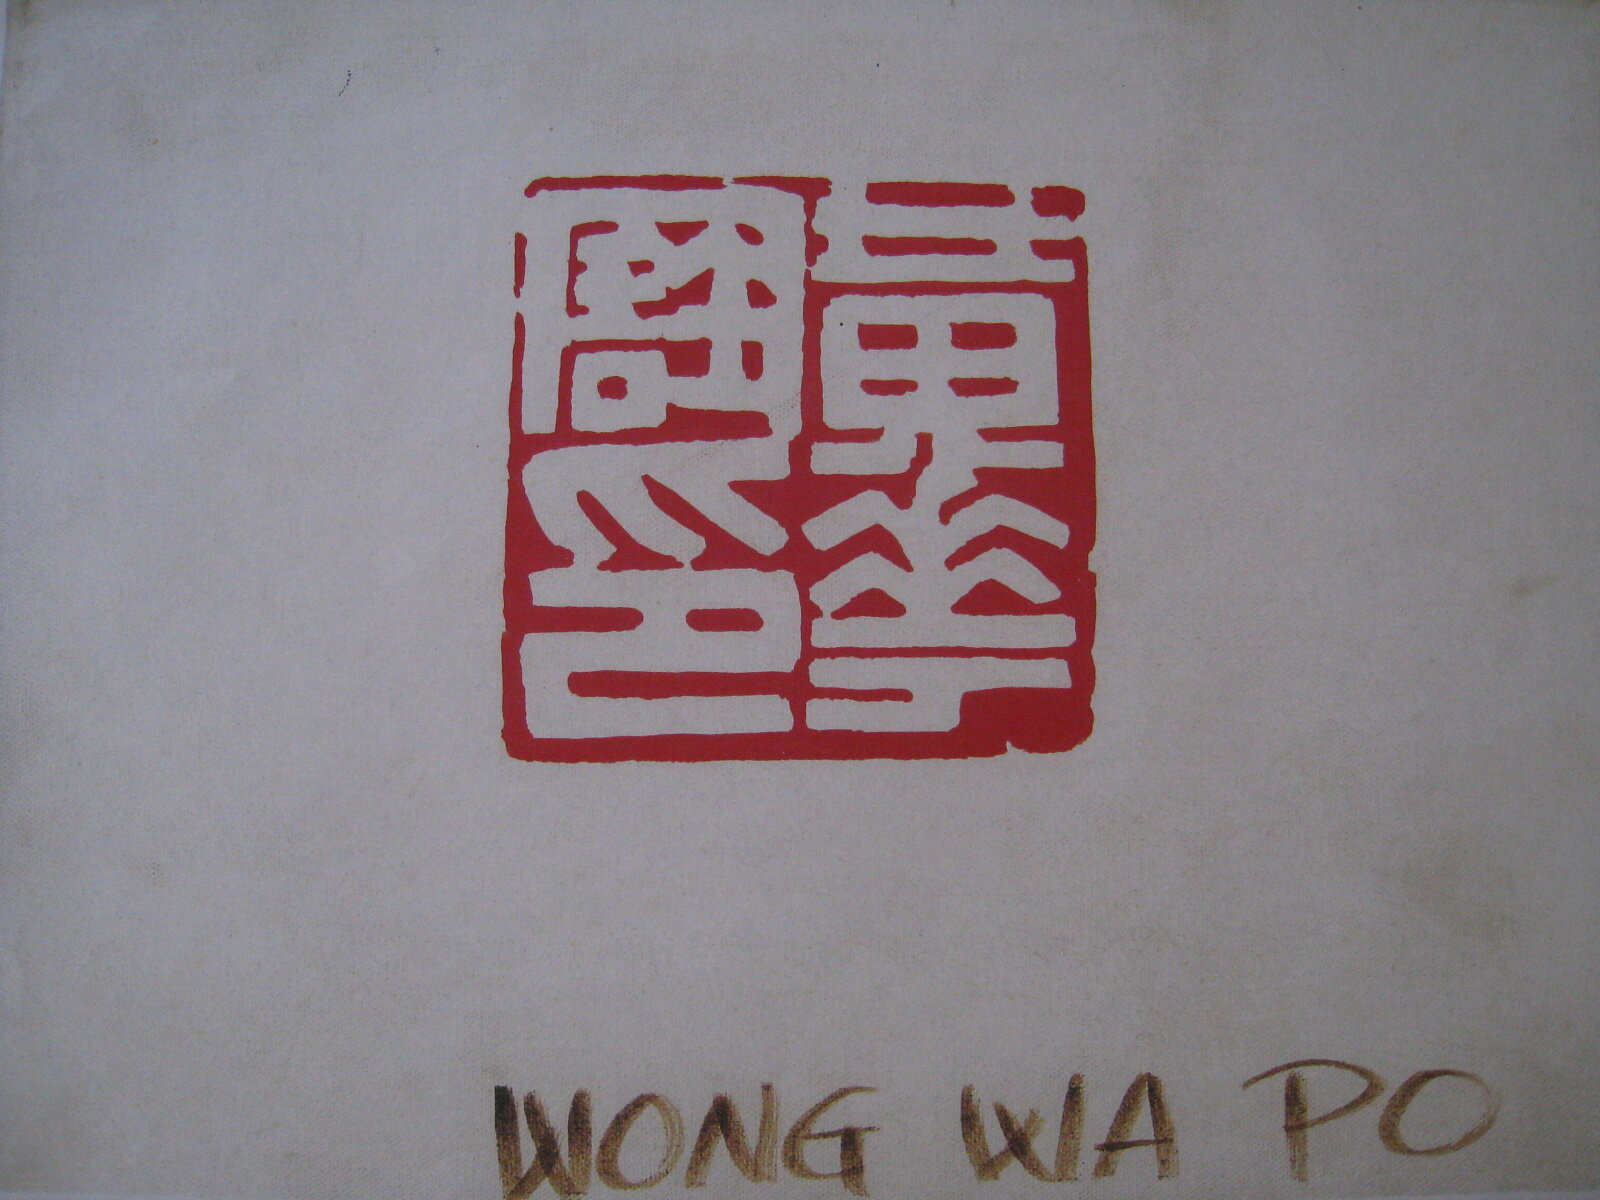 Wong Wa Po